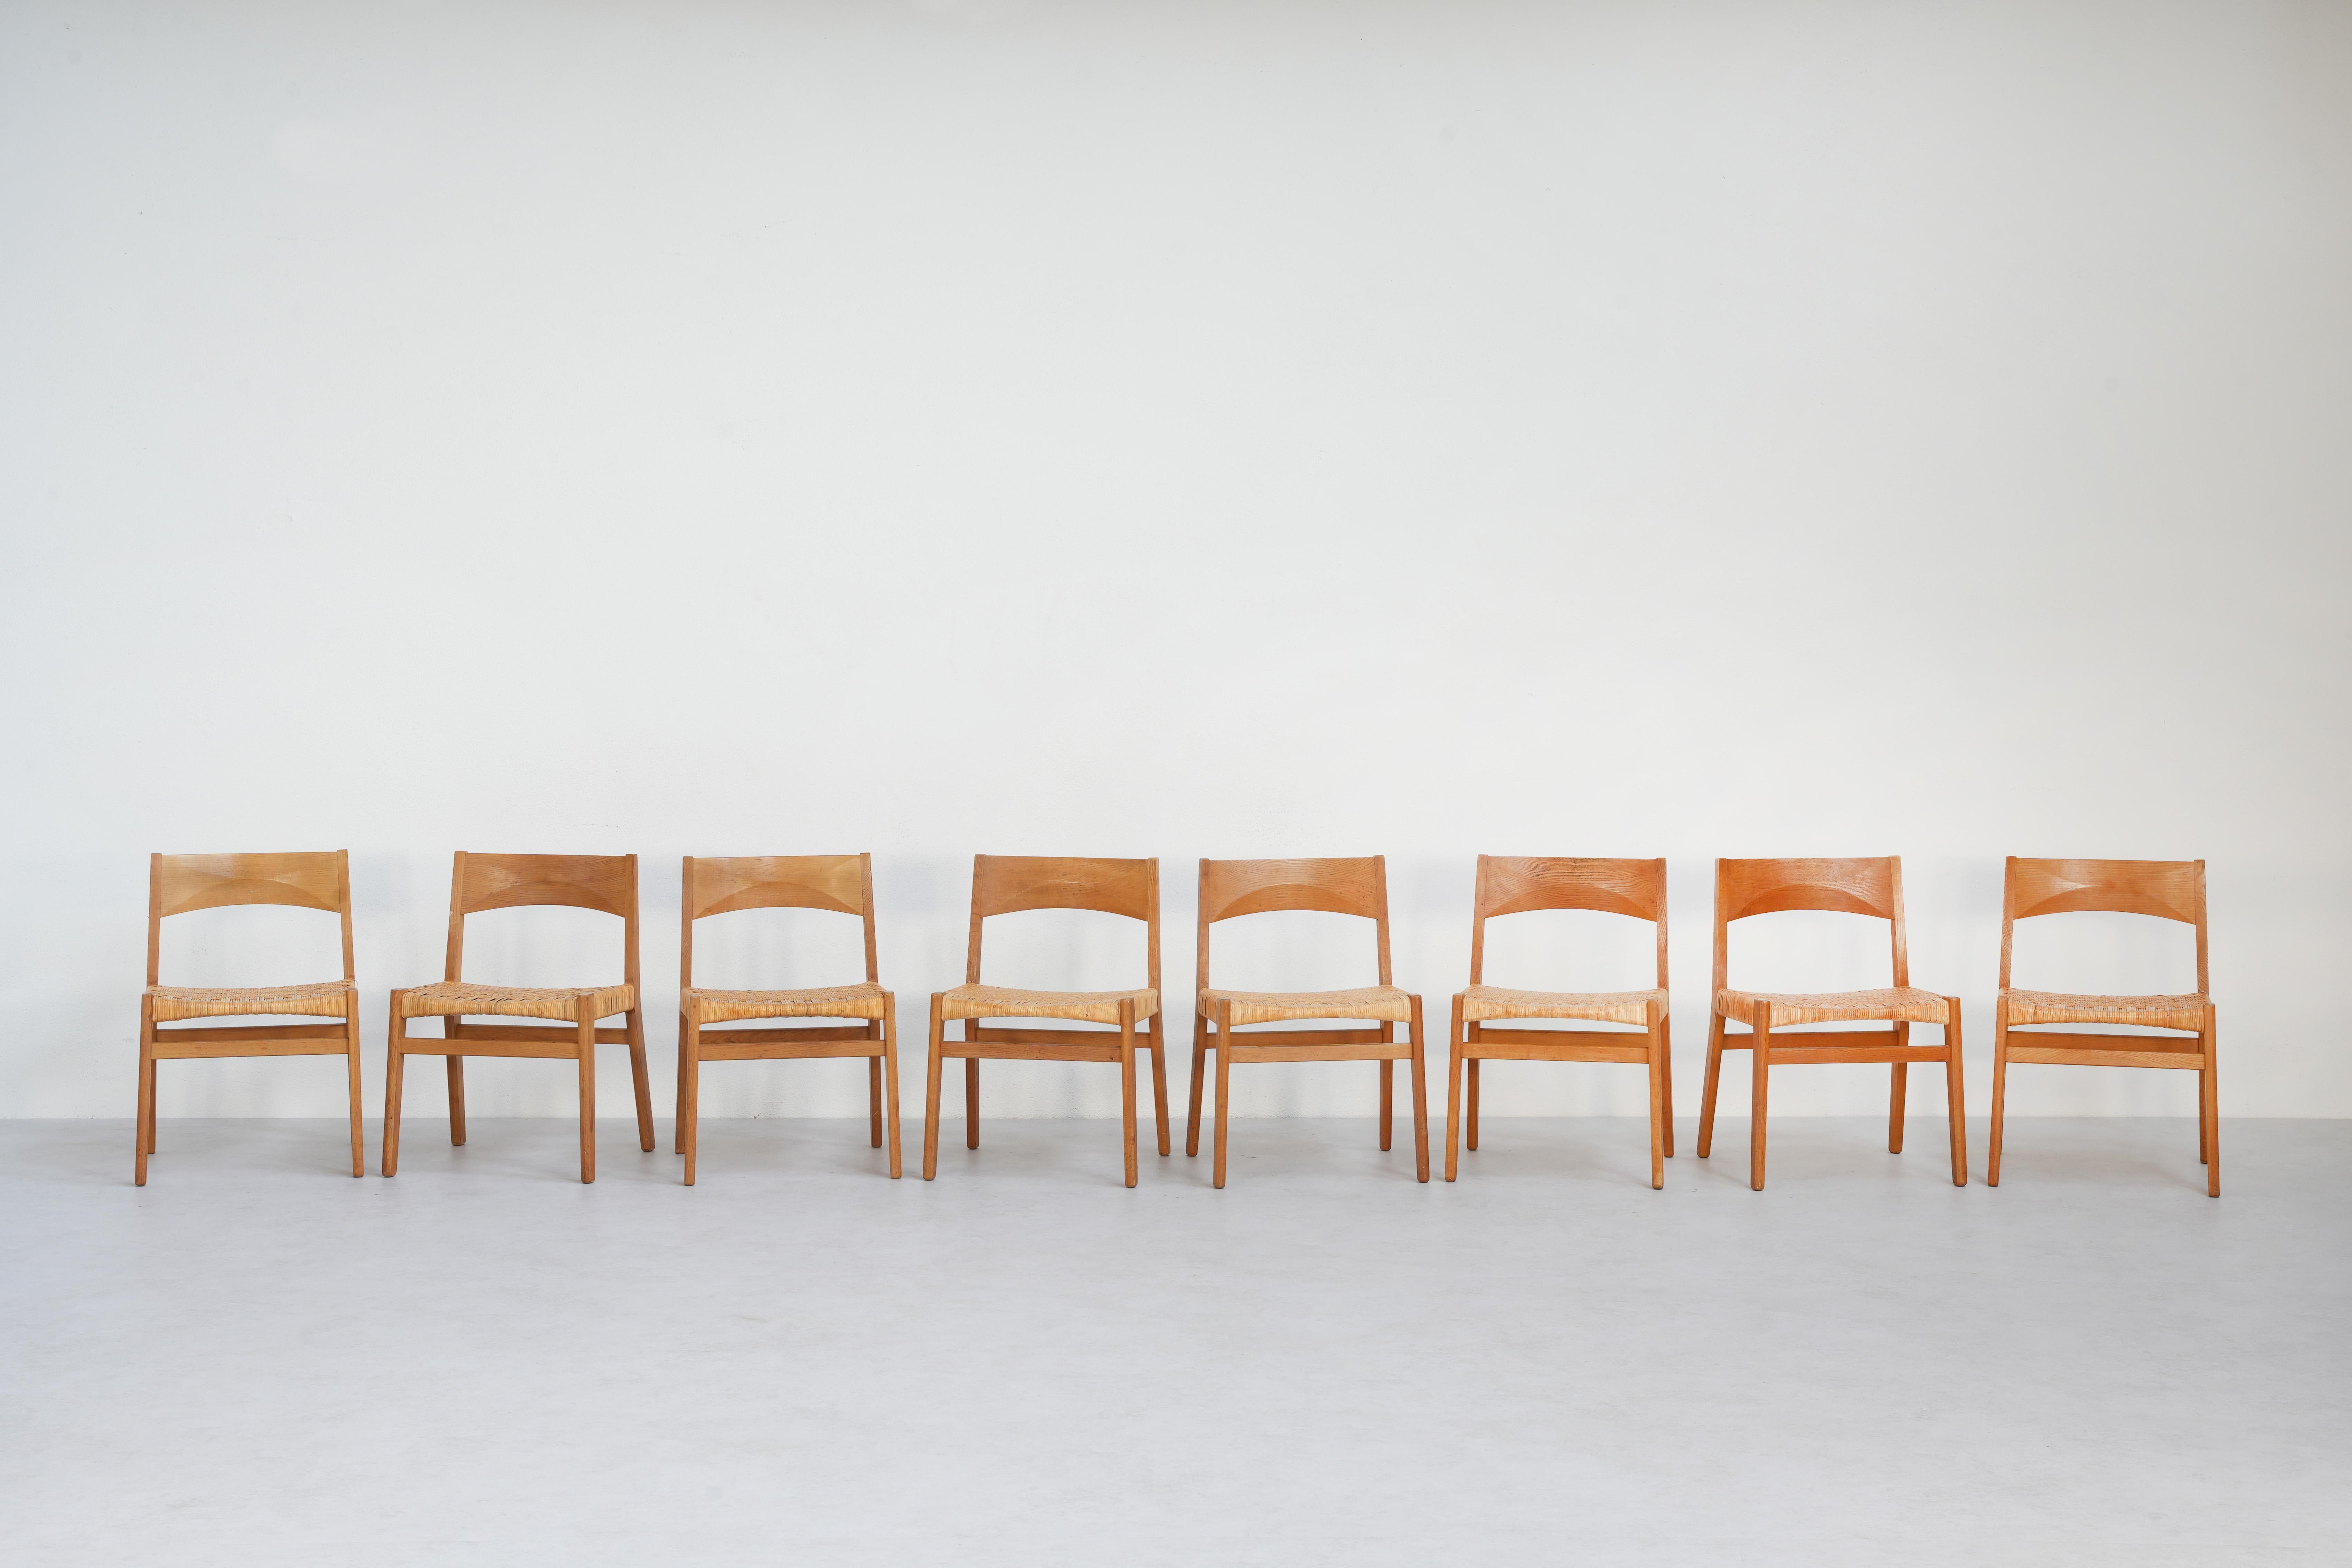 Ein schöner Satz von acht Esszimmerstühlen, entworfen von John Vedel Rieper und hergestellt von Källemo, Dänemark 1962.

Diese schönen Stühle gibt es in einer speziellen Ausführung mit einem Rohrgeflecht im Fischgrätmuster. Zusammen mit der